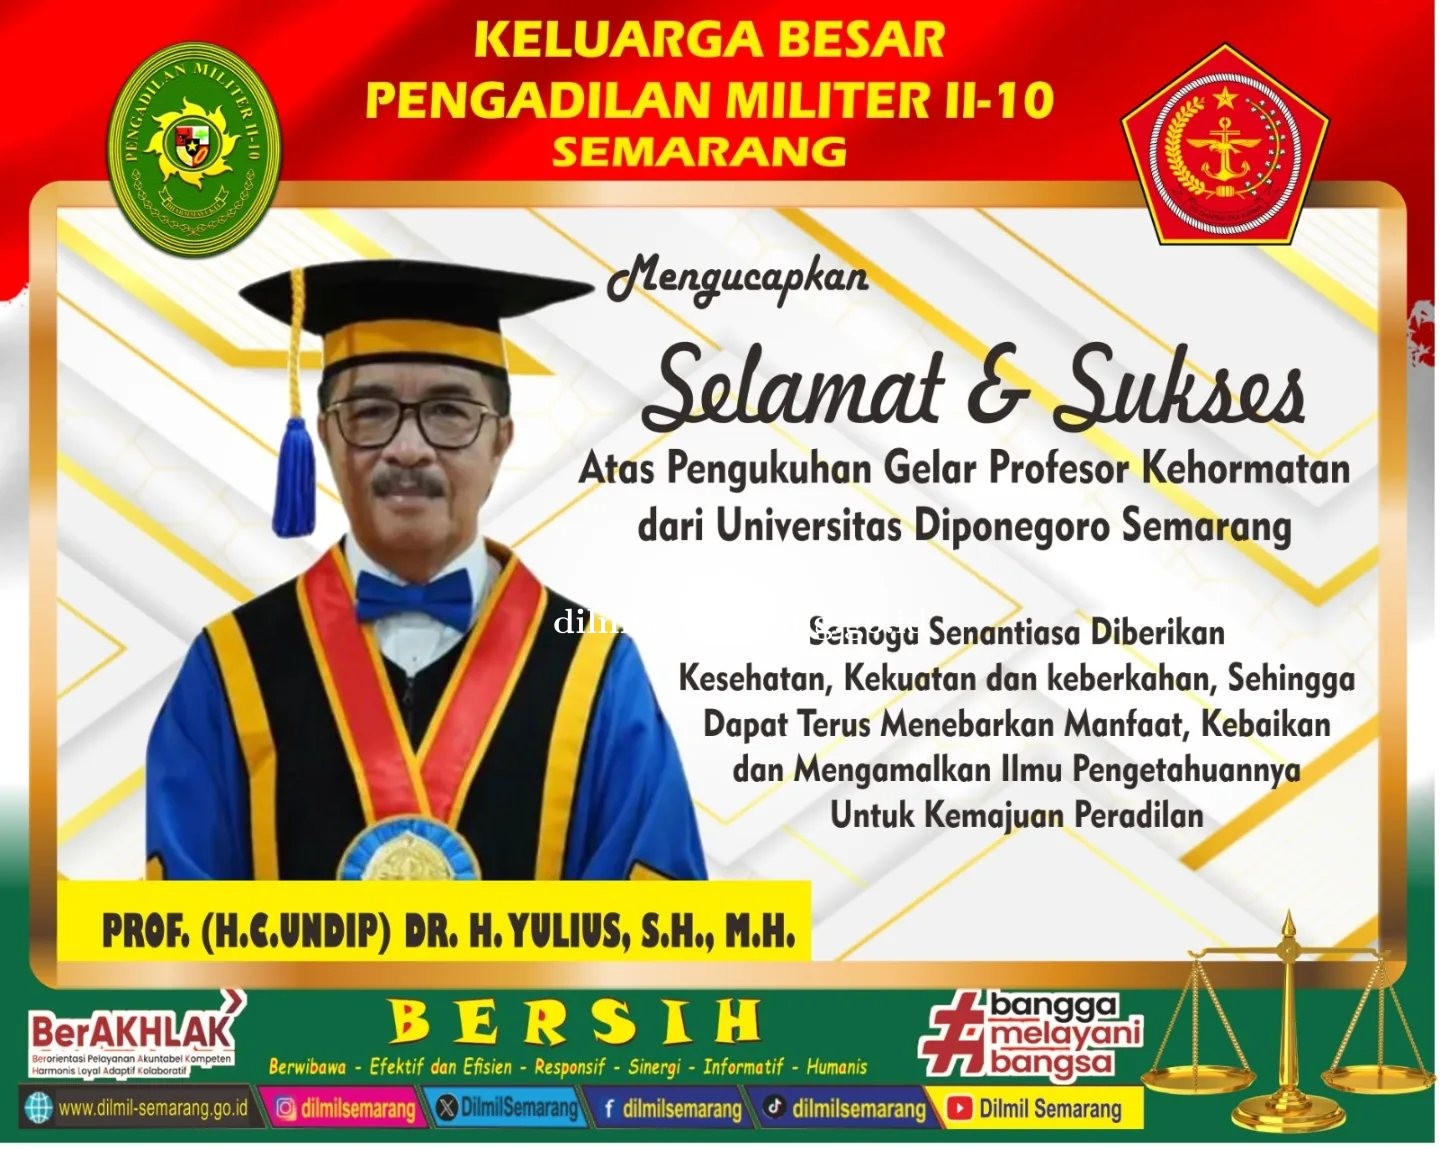 Selamat dan Sukses  Kepada Prof. (H.C. Undip) Dr. H. Yulius, S.H., M.H Atas Pengukuhan Profesor Kehormatan dari Universitas Diponegoro.